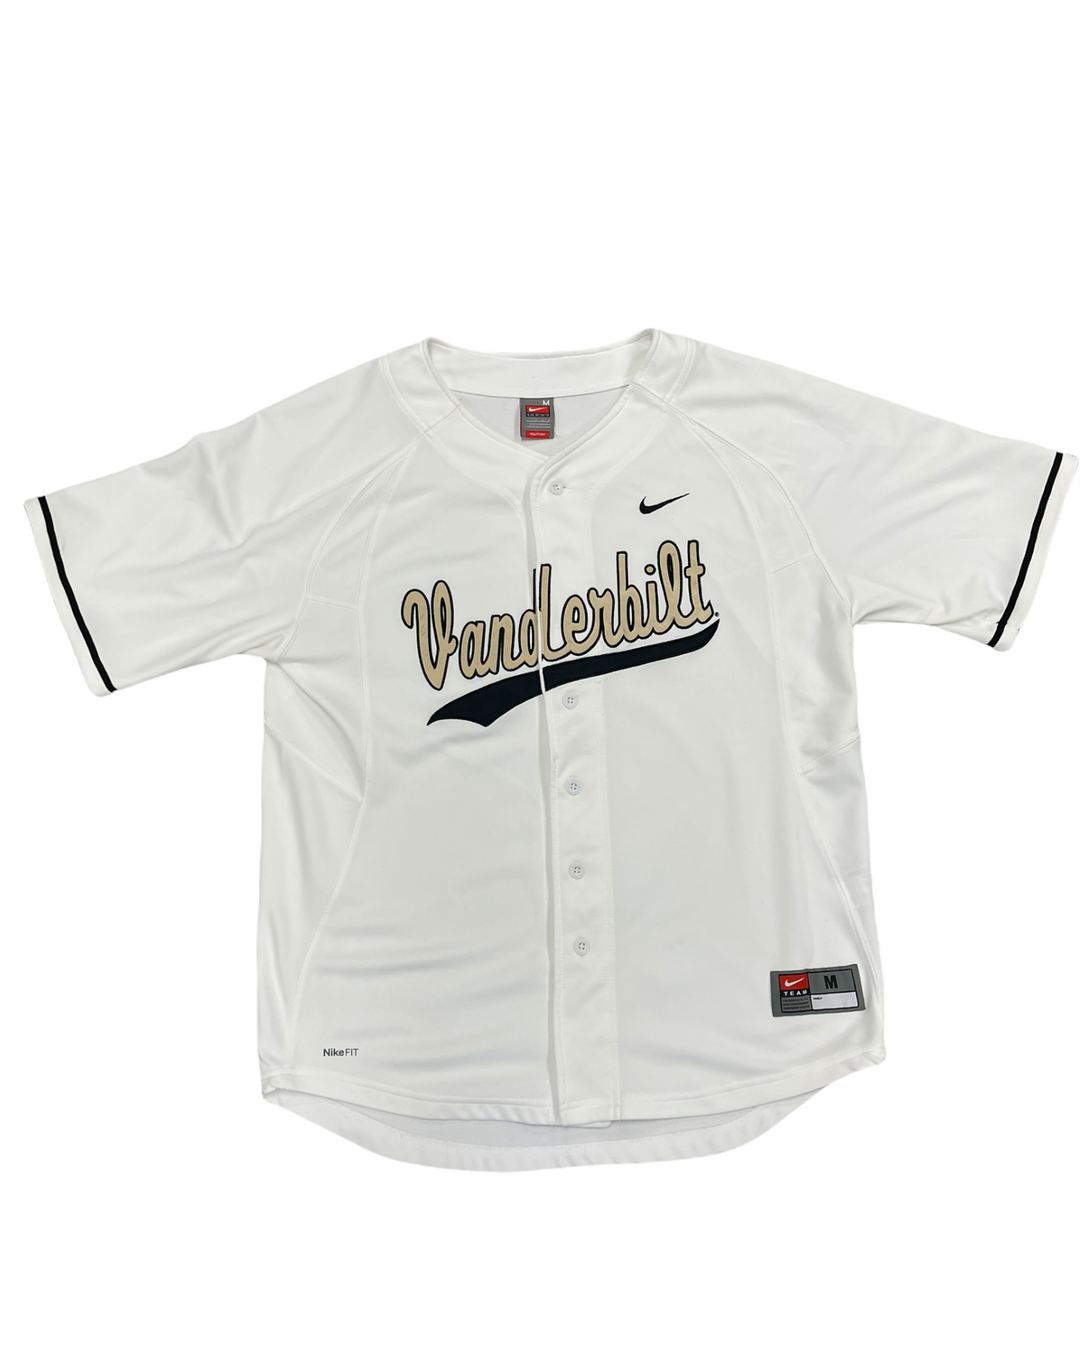 Vanderbilt Vintage Jersey